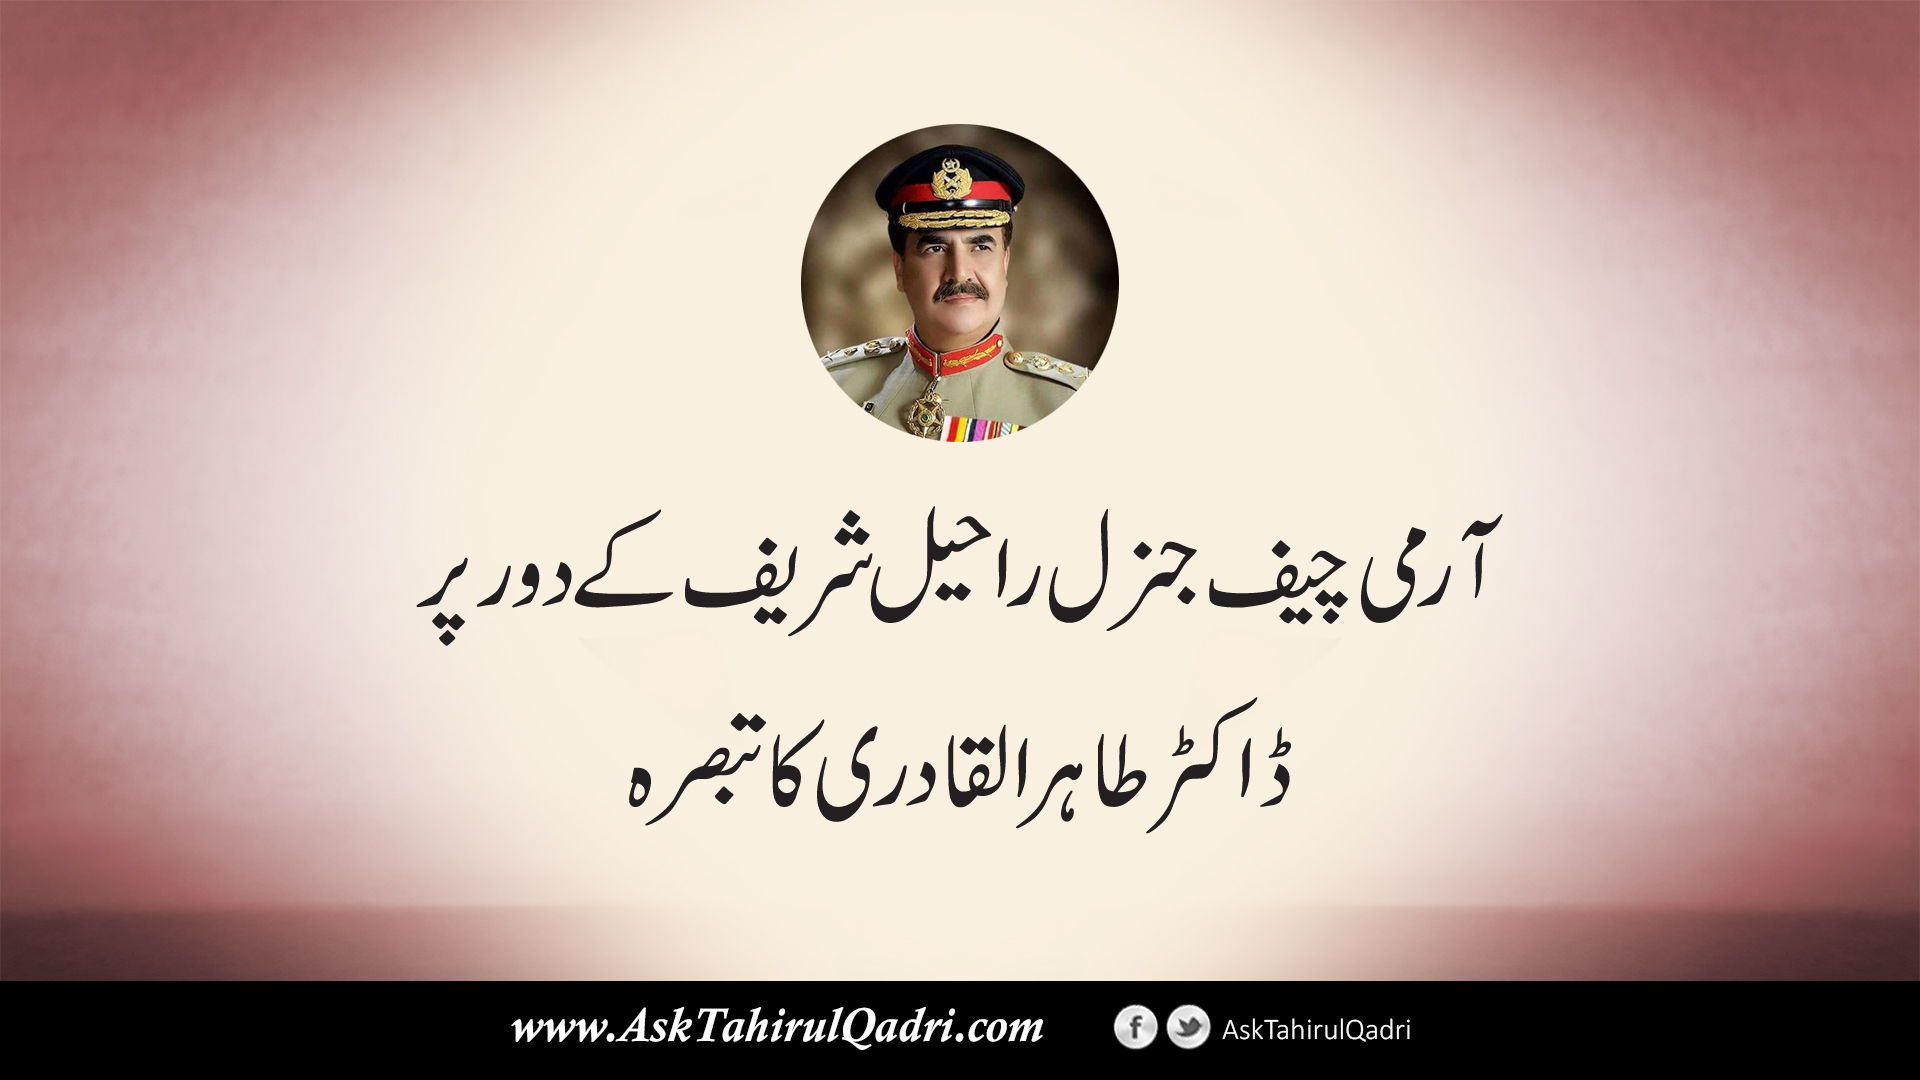 Army chief general Raheel sharif ke daur par Dr Tahir ul Qadri tabsarah?